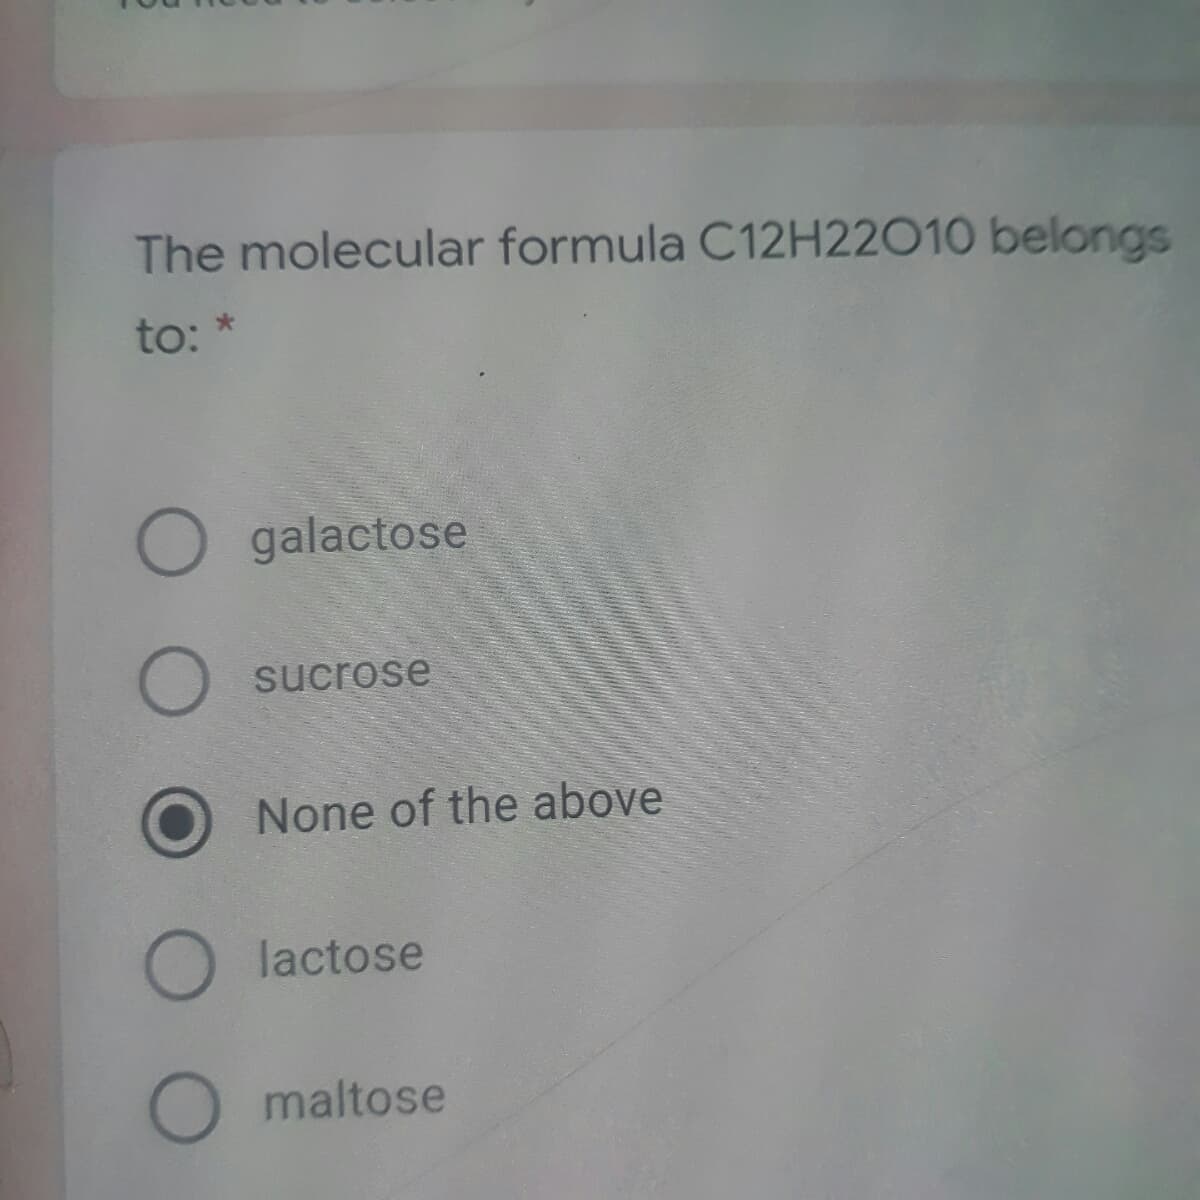 The molecular formula C12H22010 belongs
to:
O galactose
sucrose
None of the above
lactose
maltose
